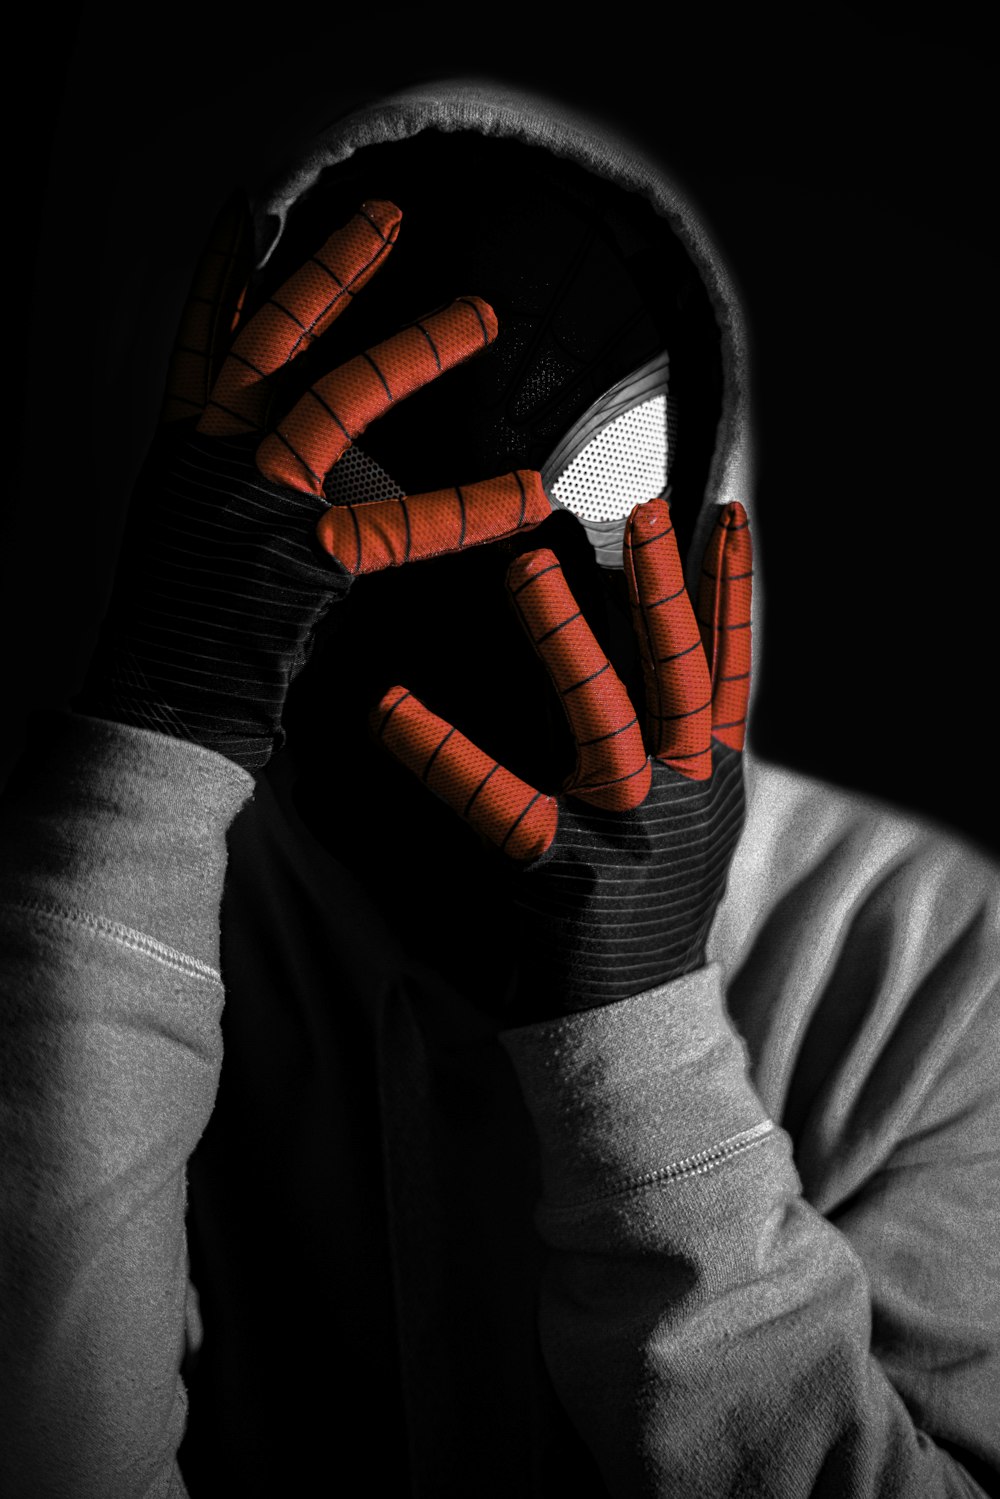 uma pessoa vestindo uma aranha - máscara do homem cobrindo seu rosto